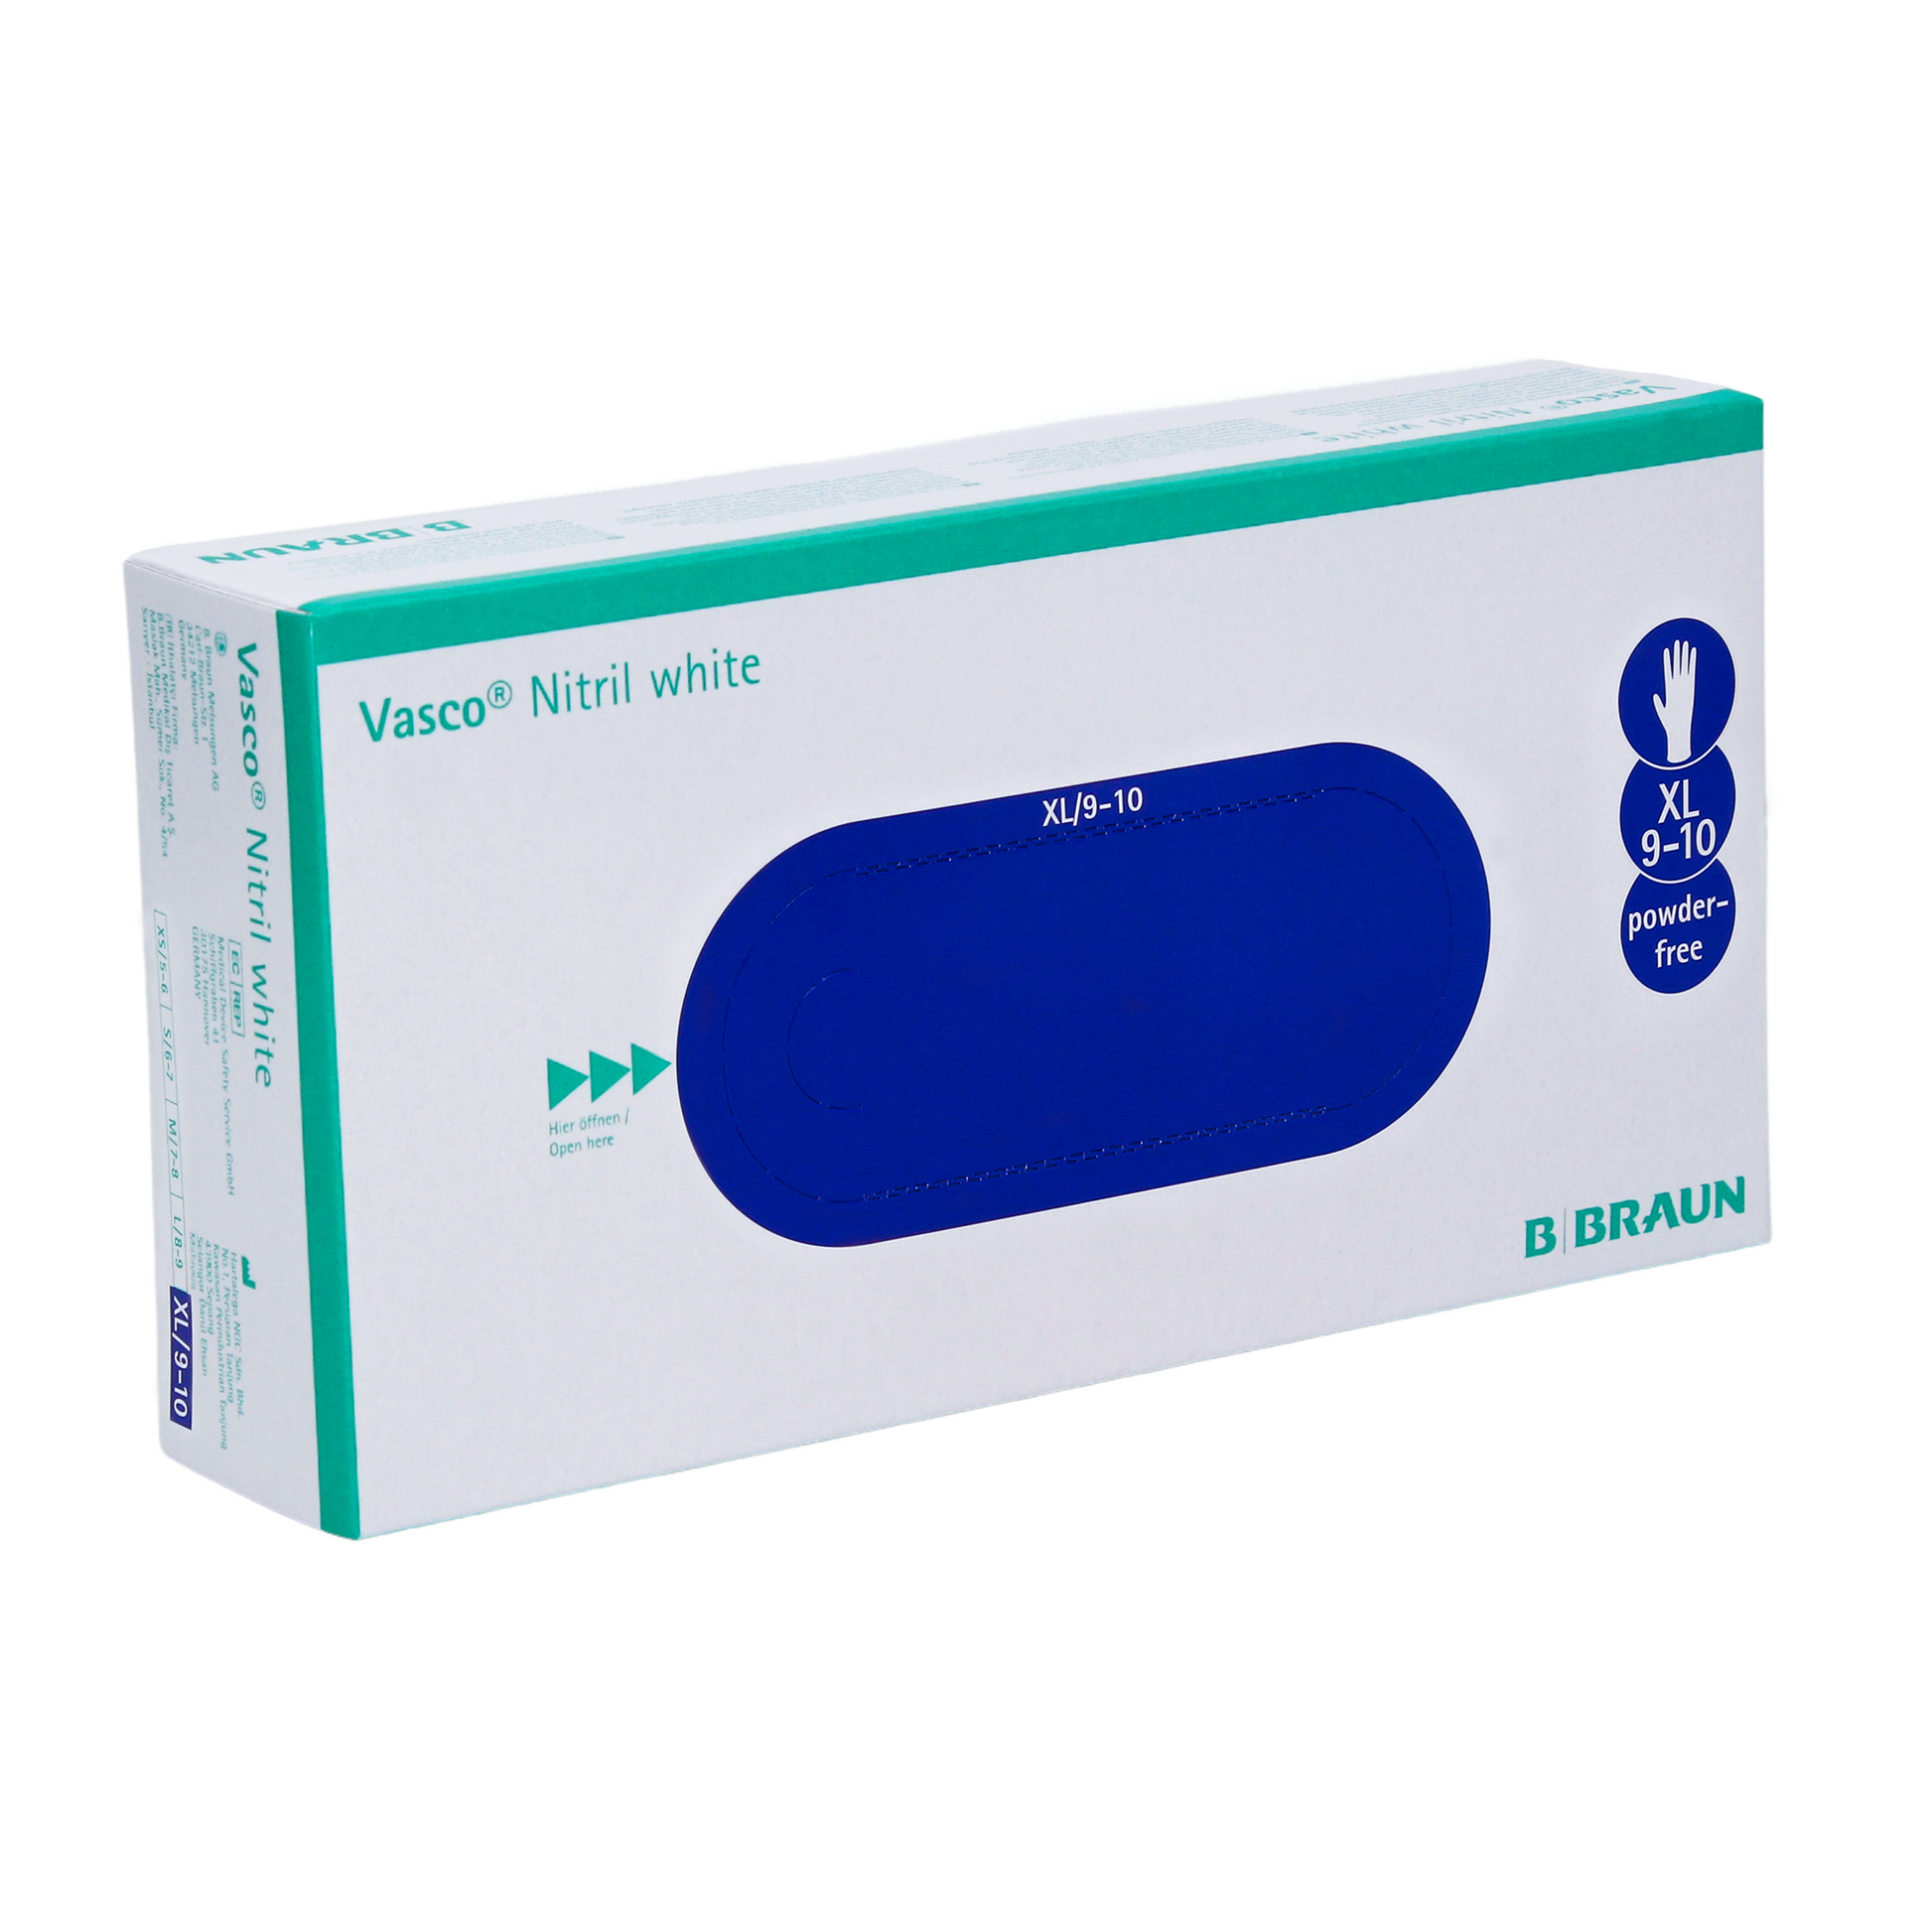 Eine Schachtel B. Braun Vasco® Nitril weiße Einmalhandschuhe, Größe XL 9-10, puderfrei. Die Schachtel ist überwiegend weiß und blau mit Produkt- und Markenangaben der B. Braun Melsungen AG.